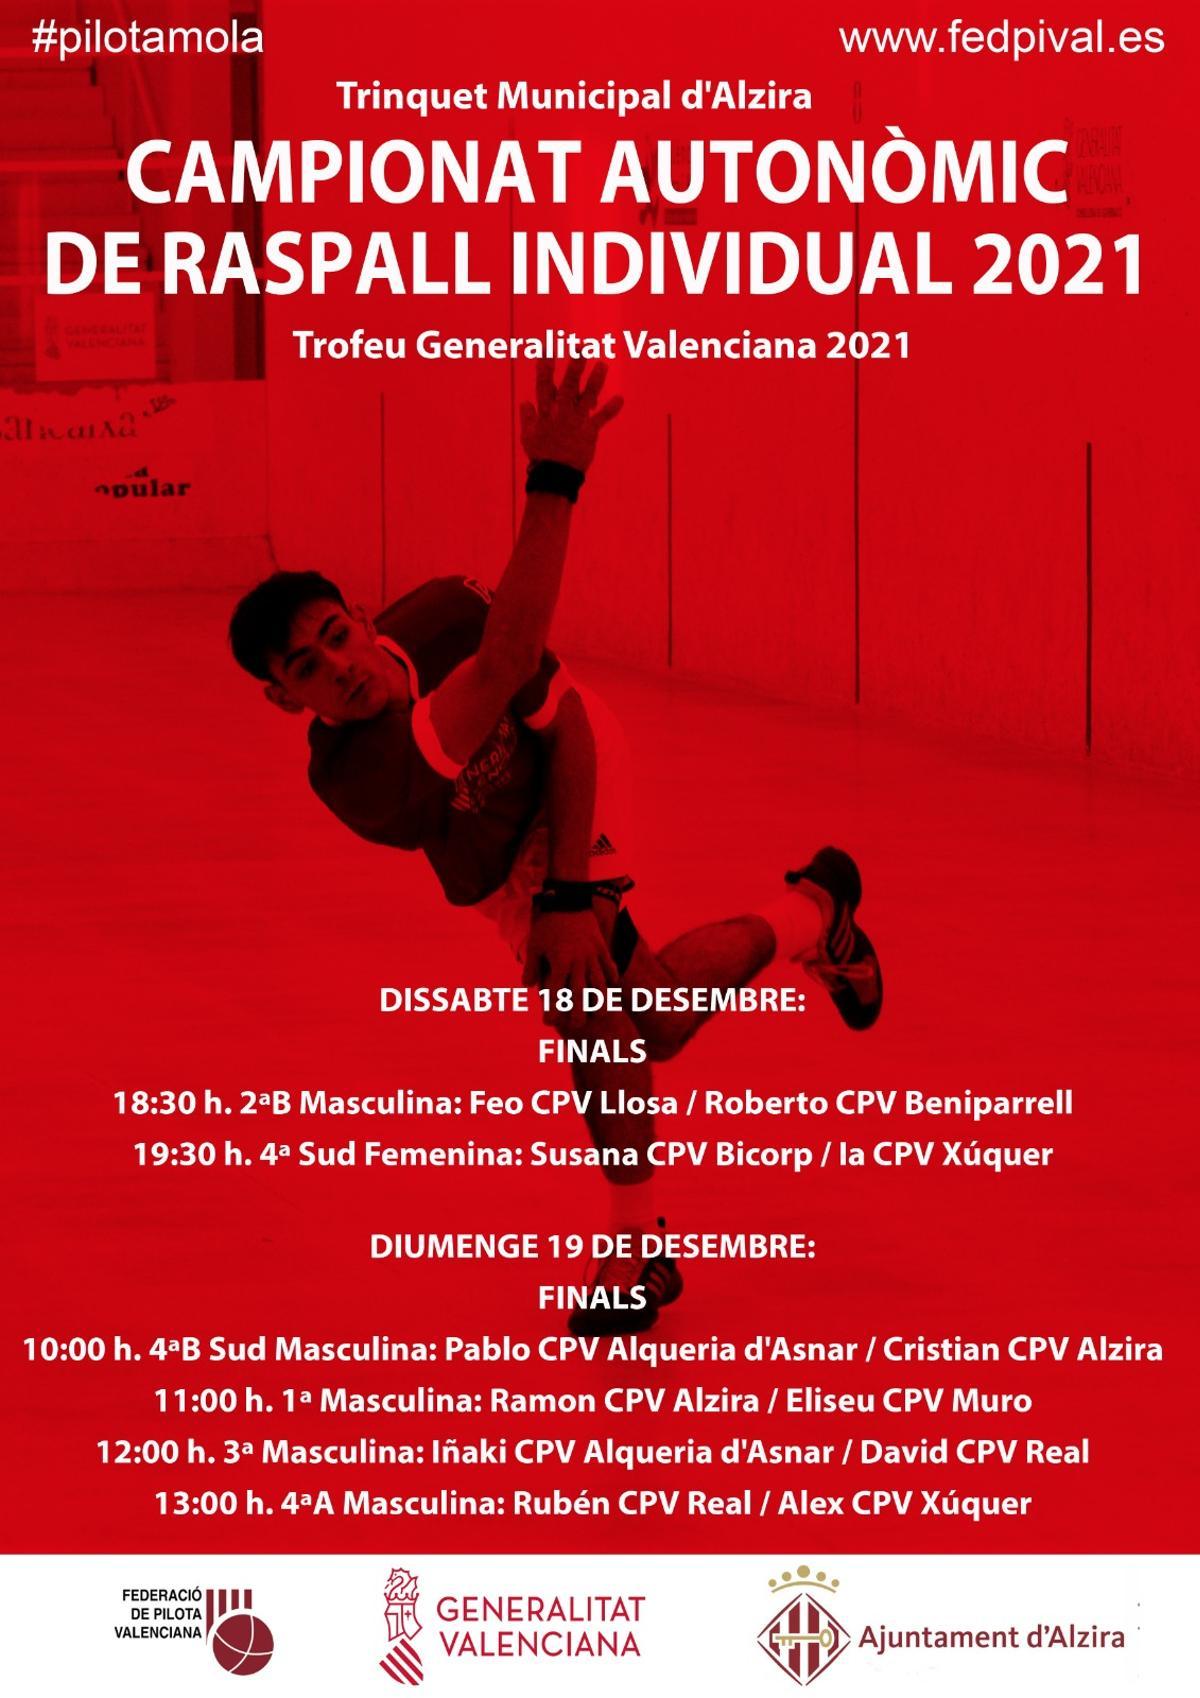 Les finals a la seu d’Alzira començaran el dissabte a les 18:30h entre Feo CPV Llosa i Roberto CPV Beniparrell.